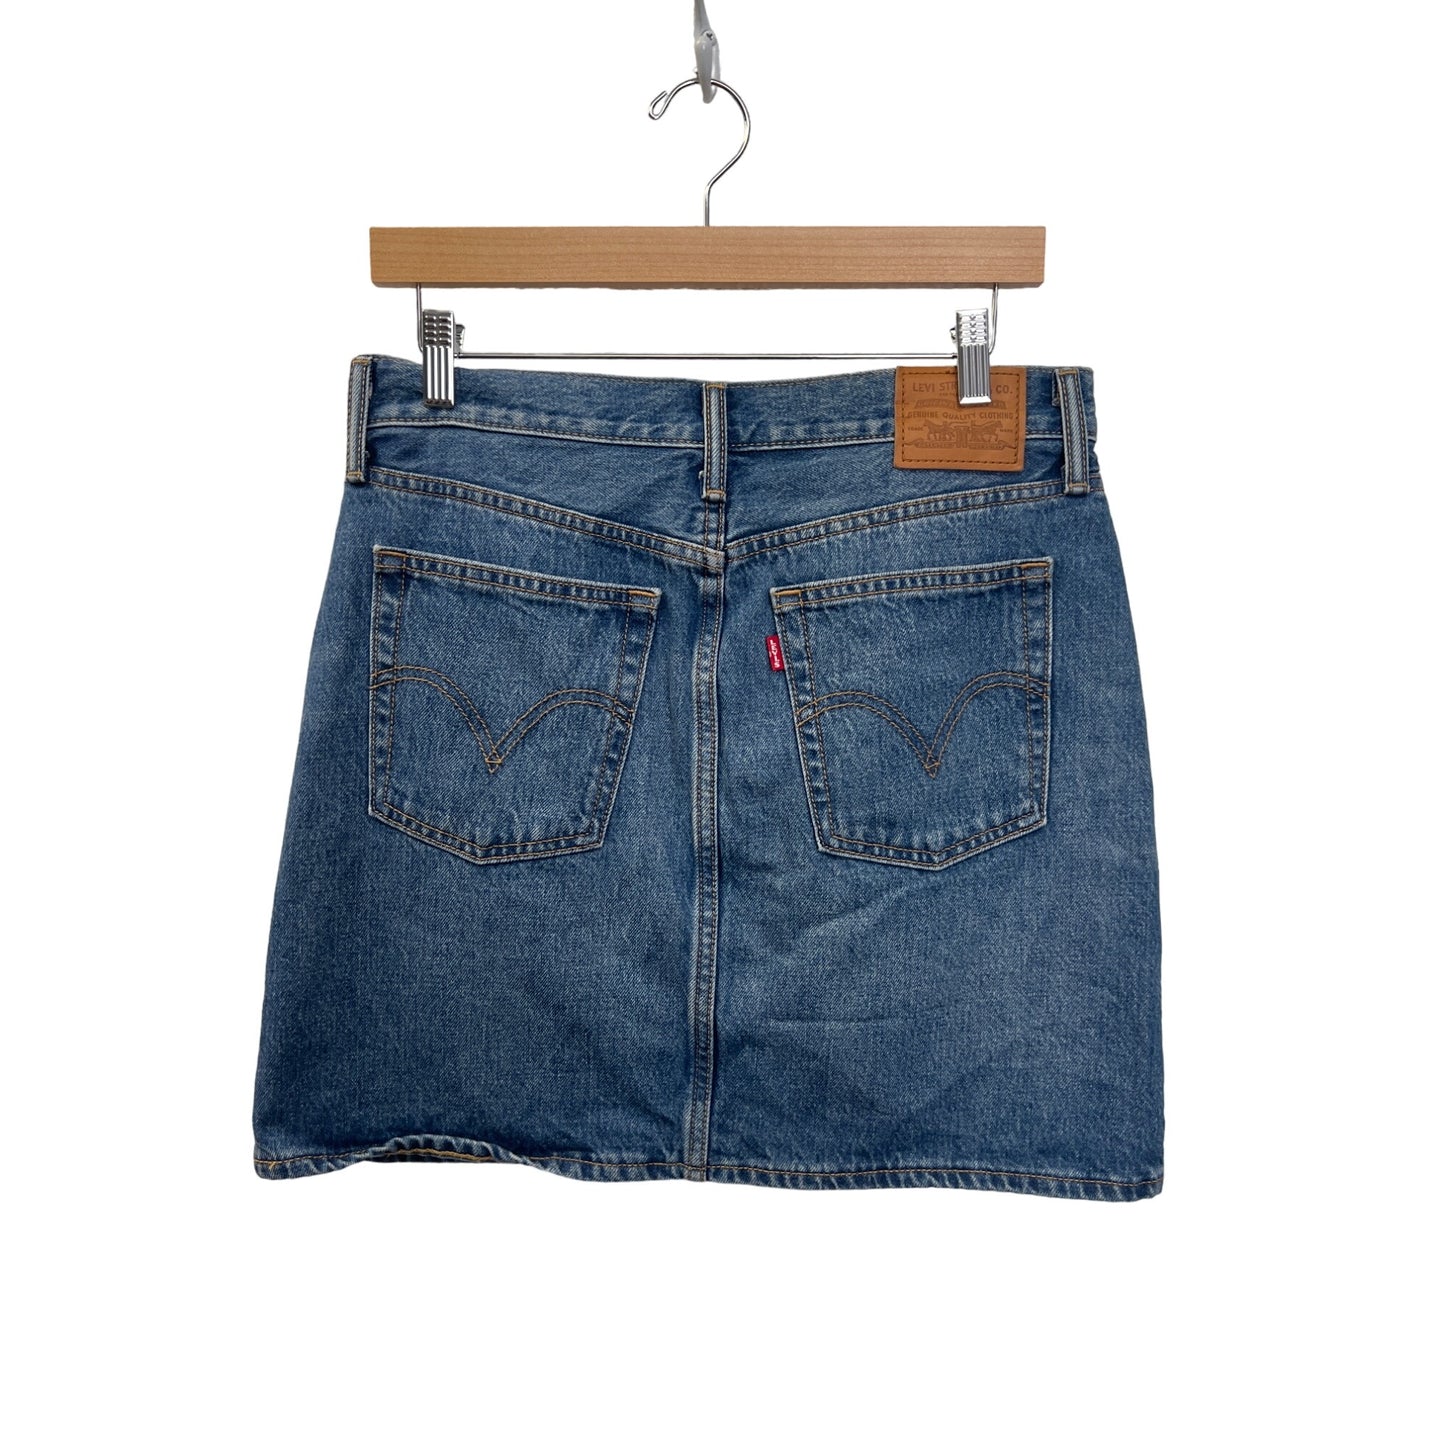 Levi's Classic Short Denim Red Tab Mini Jean Skirt